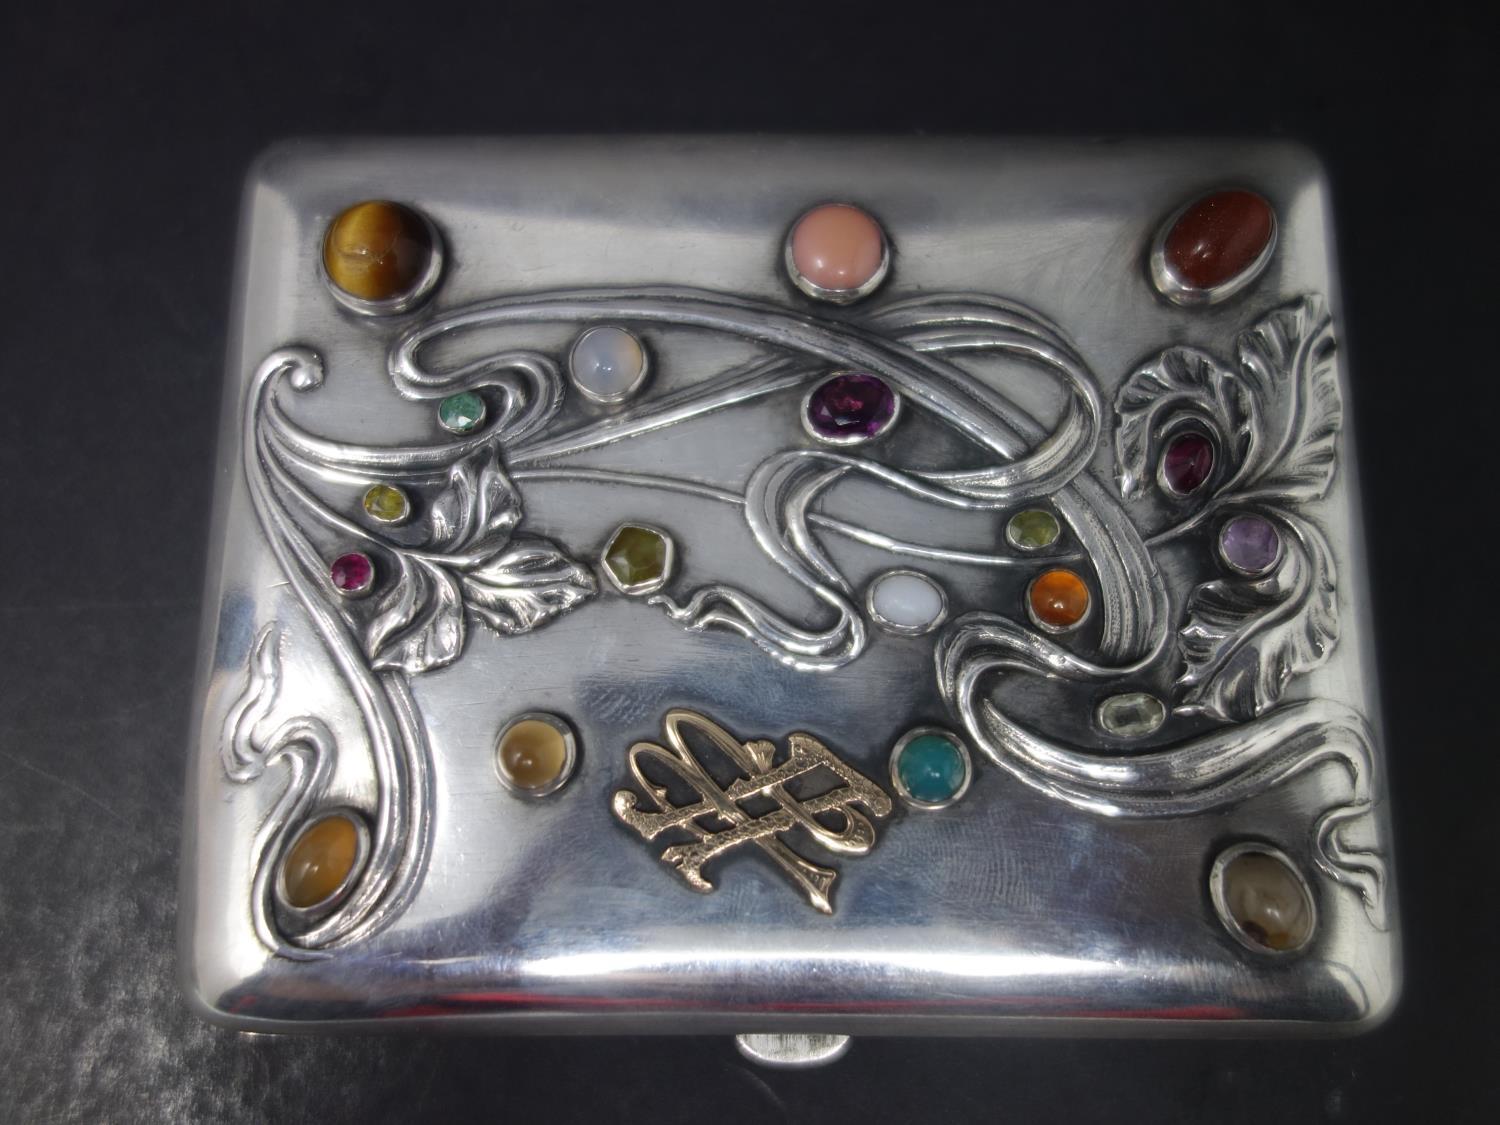 A 19th century Russian silver cigarette case, set with semi-precious and precious stones, to include